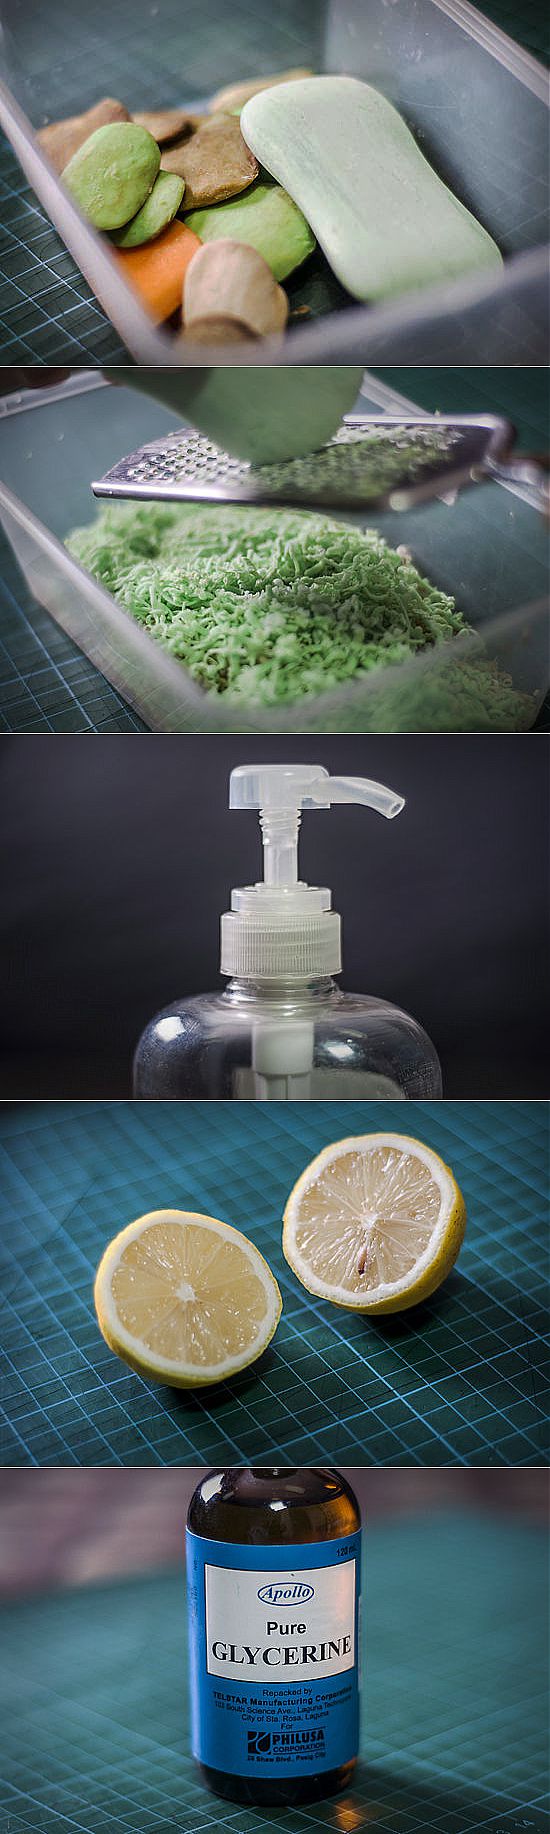 Использование обмылков: пошаговая инструкция по мыловарению в домашних условиях